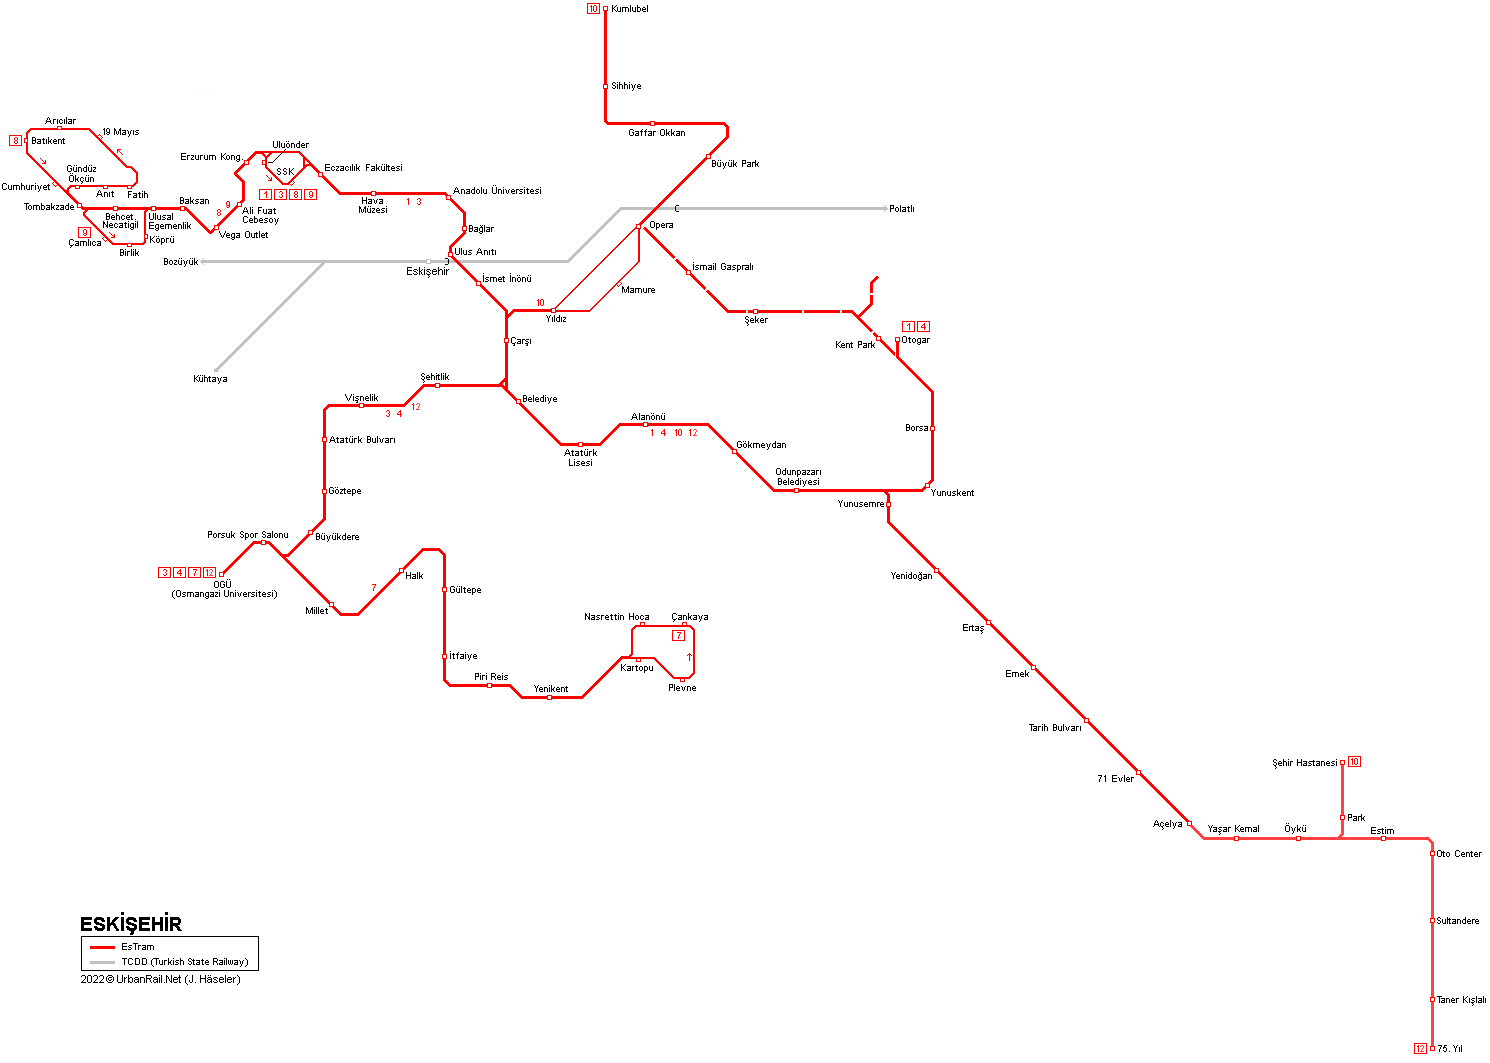 Eskisehir Tram Map